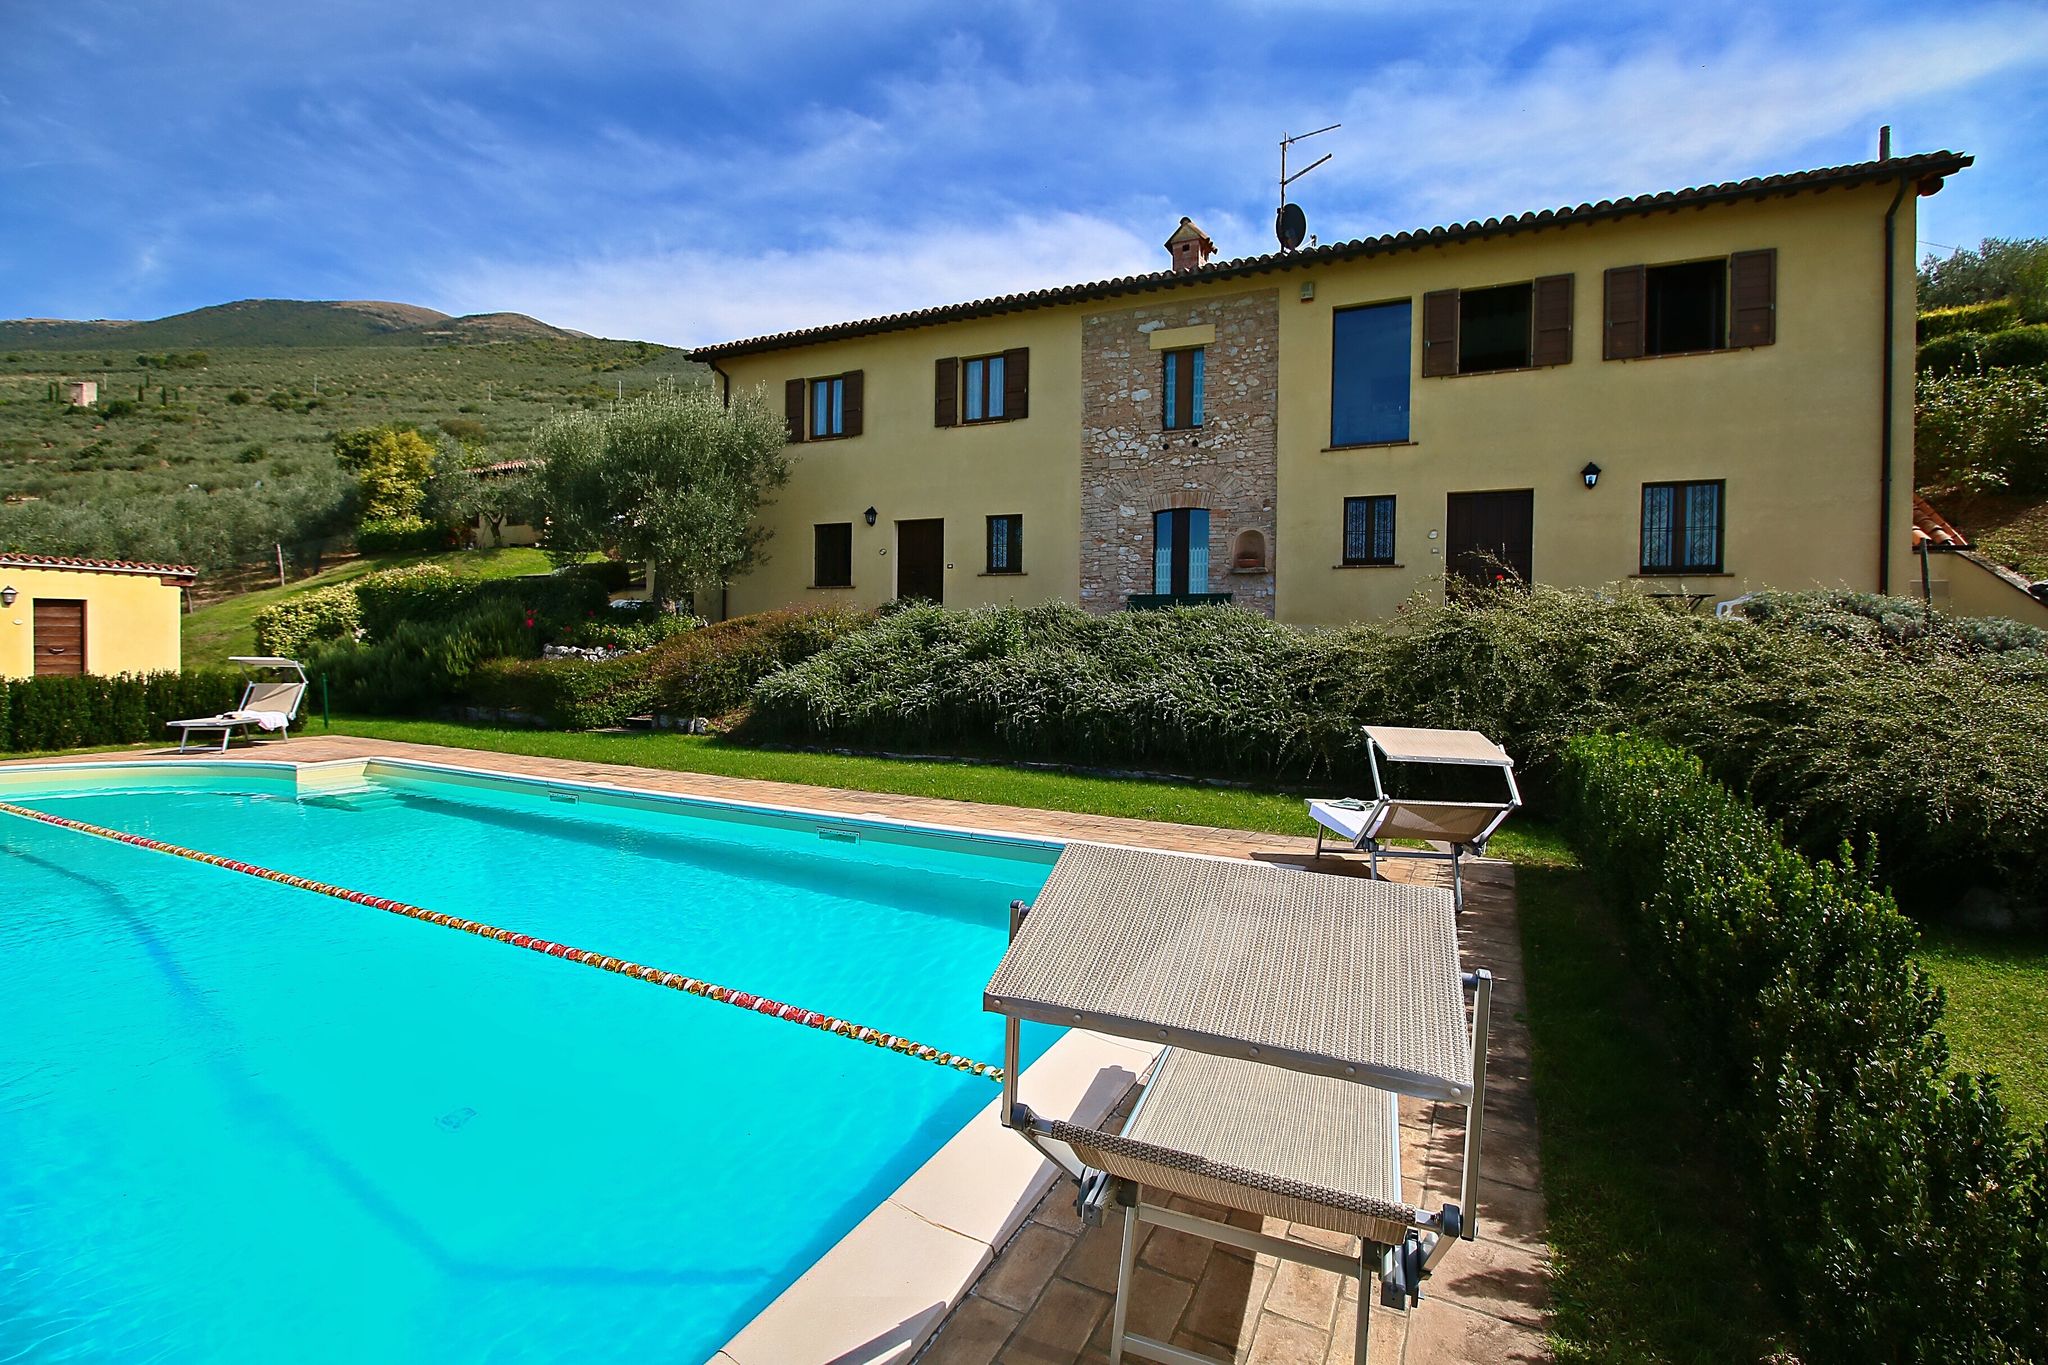 Idyllisch vakantiehuis met zwembad dicht bij Trevi